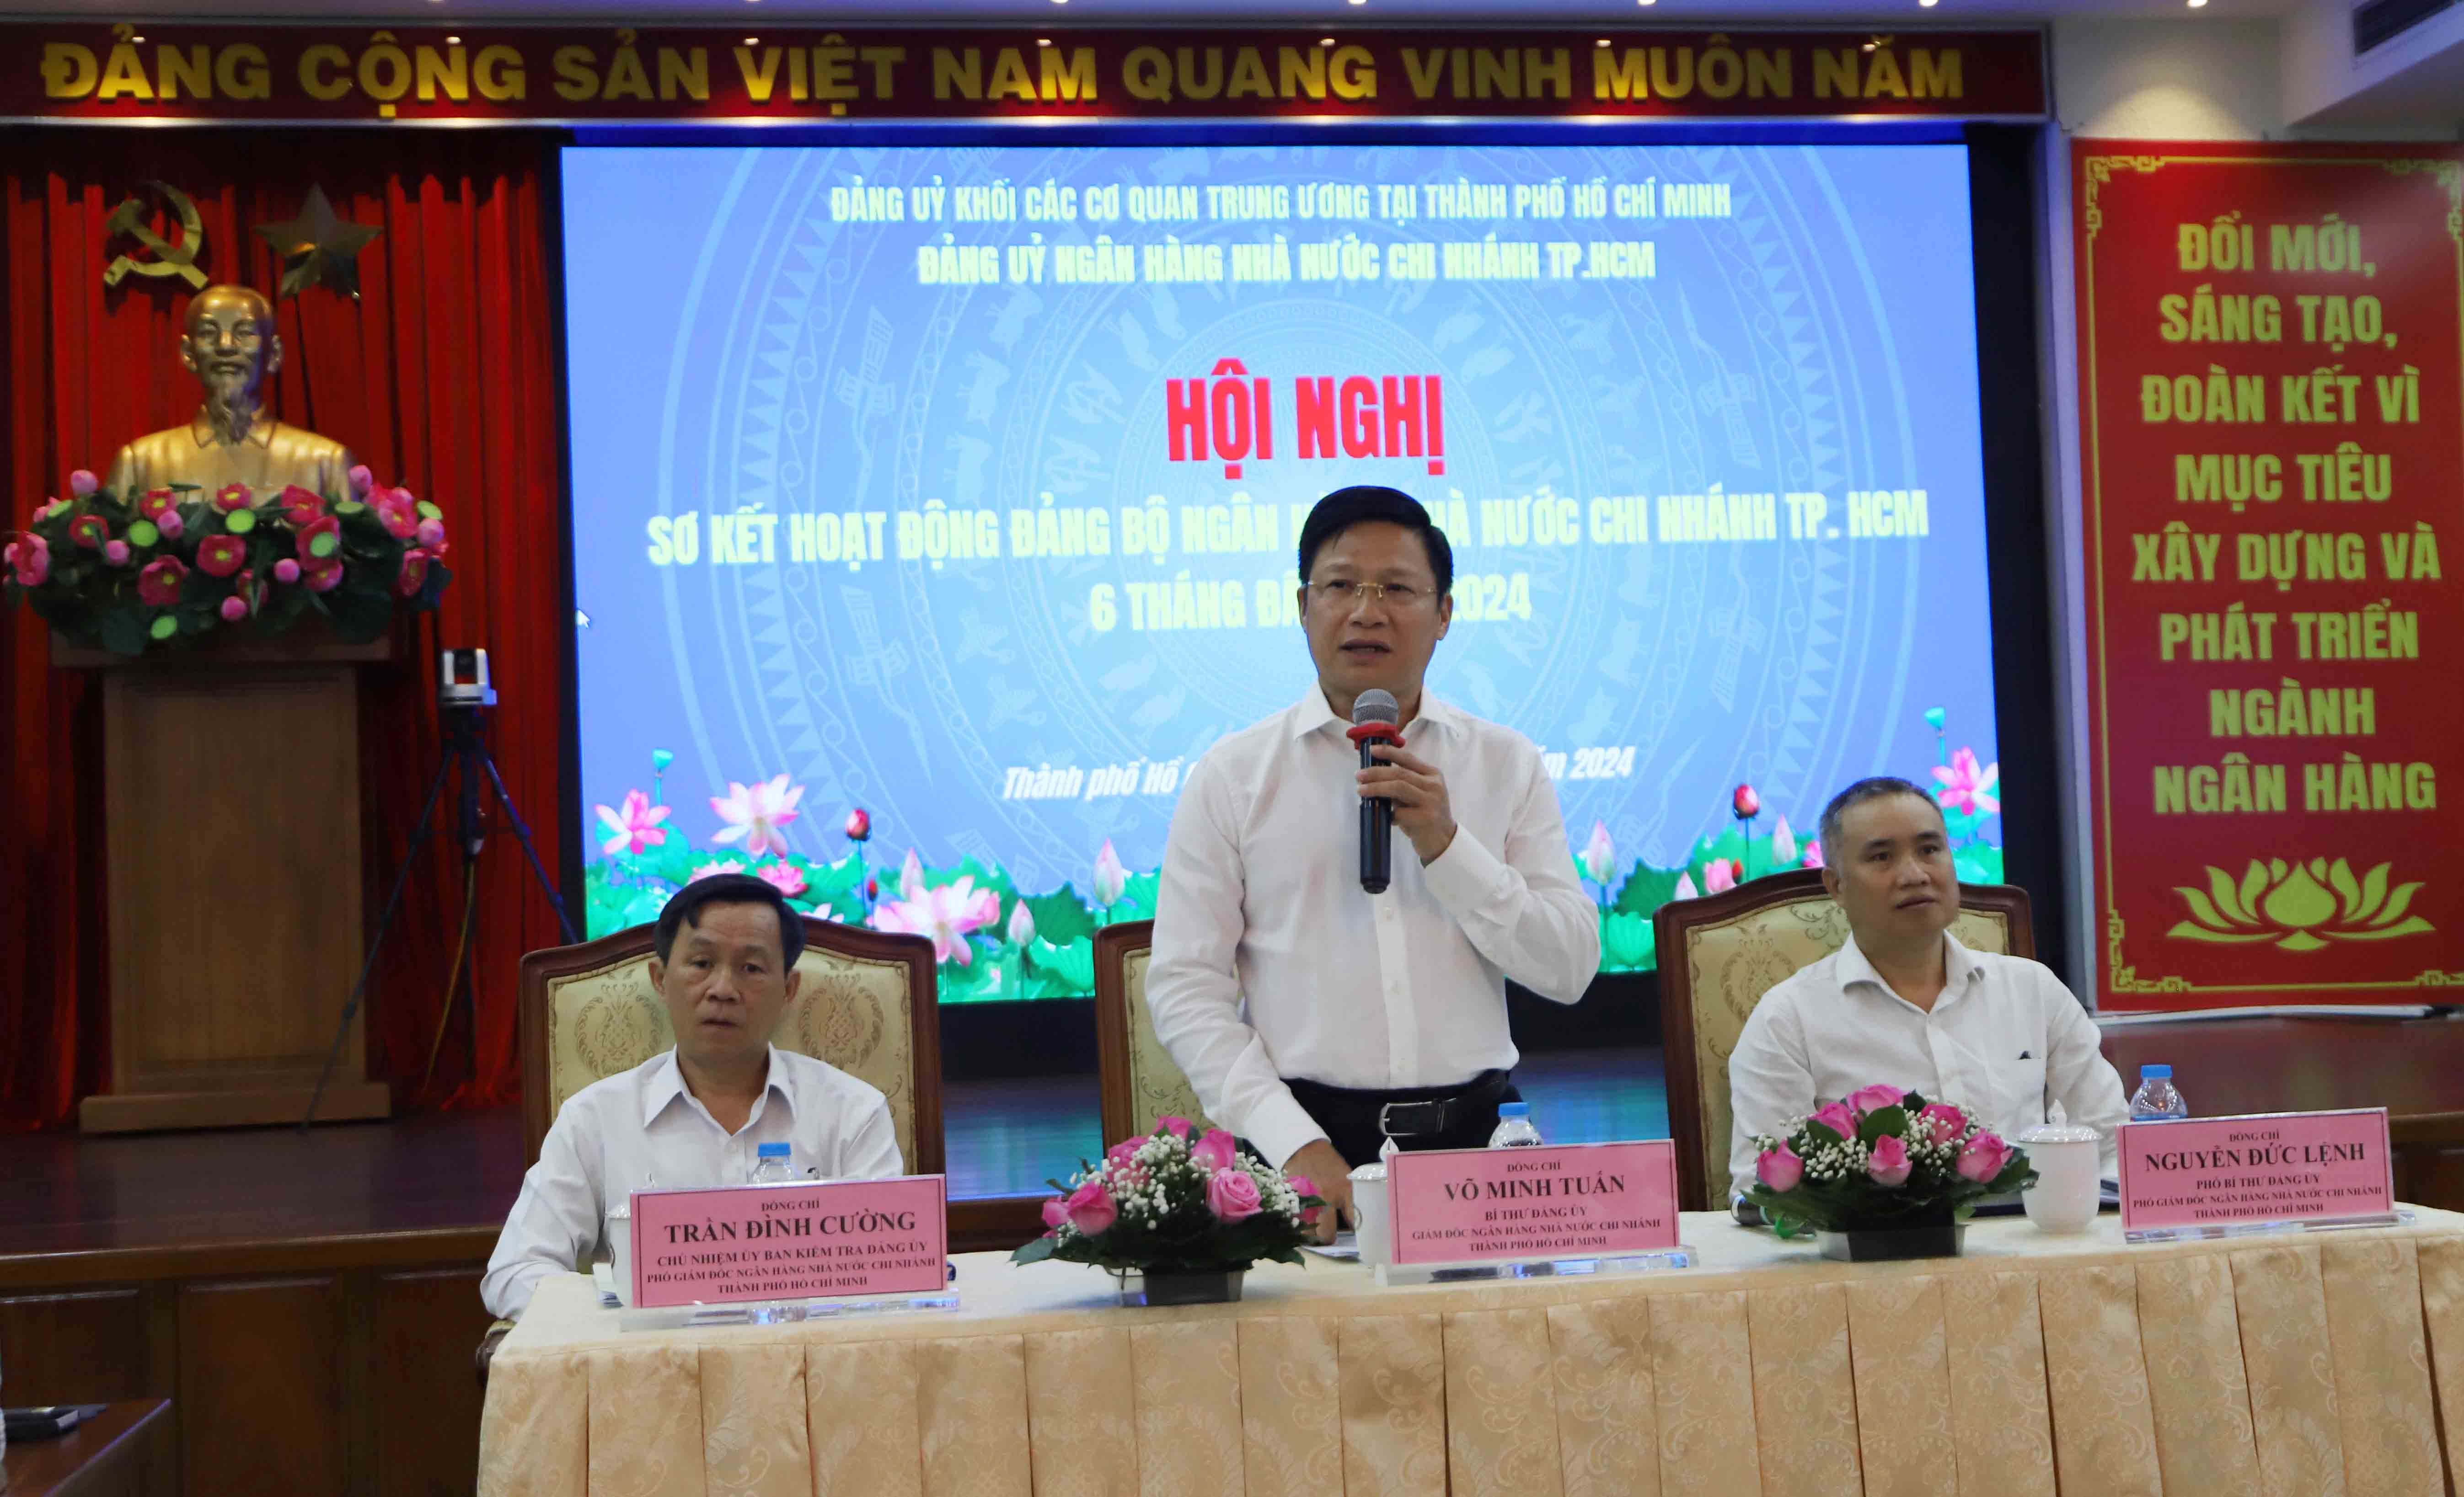 TP. Hồ Chí Minh: Thị trường tiền tệ và hoạt động ngân hàng ổn định, thông suốt